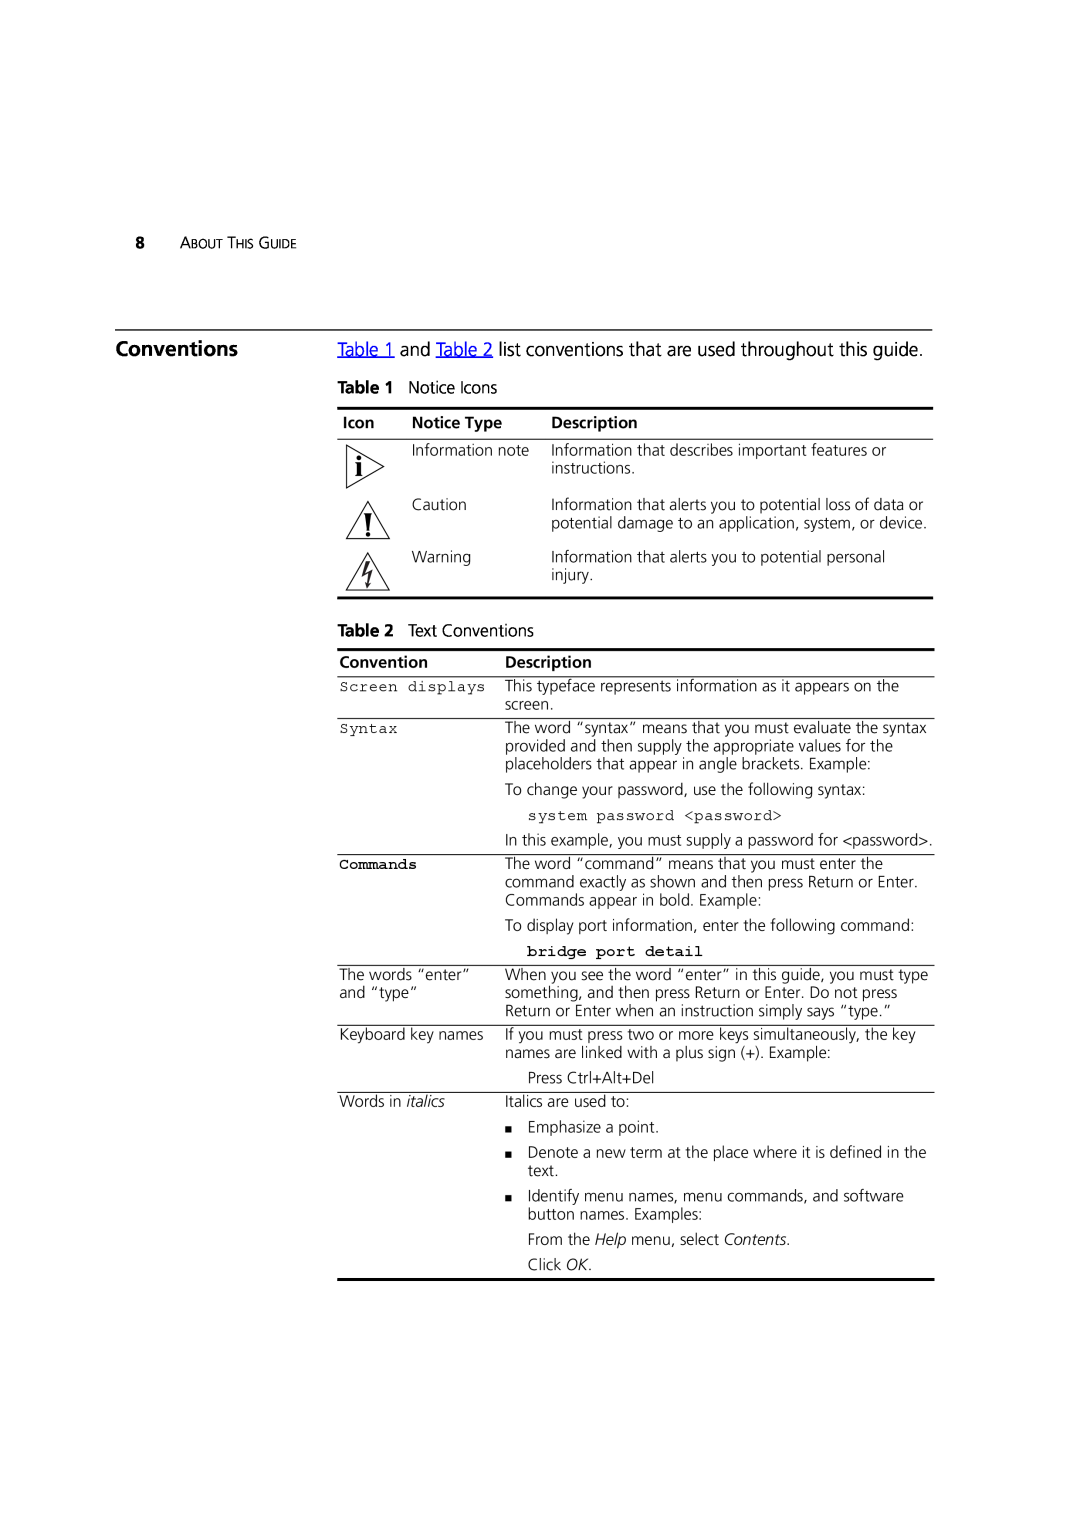 3Com DUA1770-0AAA04 manual Notice Icons, Text Conventions, Commands, bridge port detail 